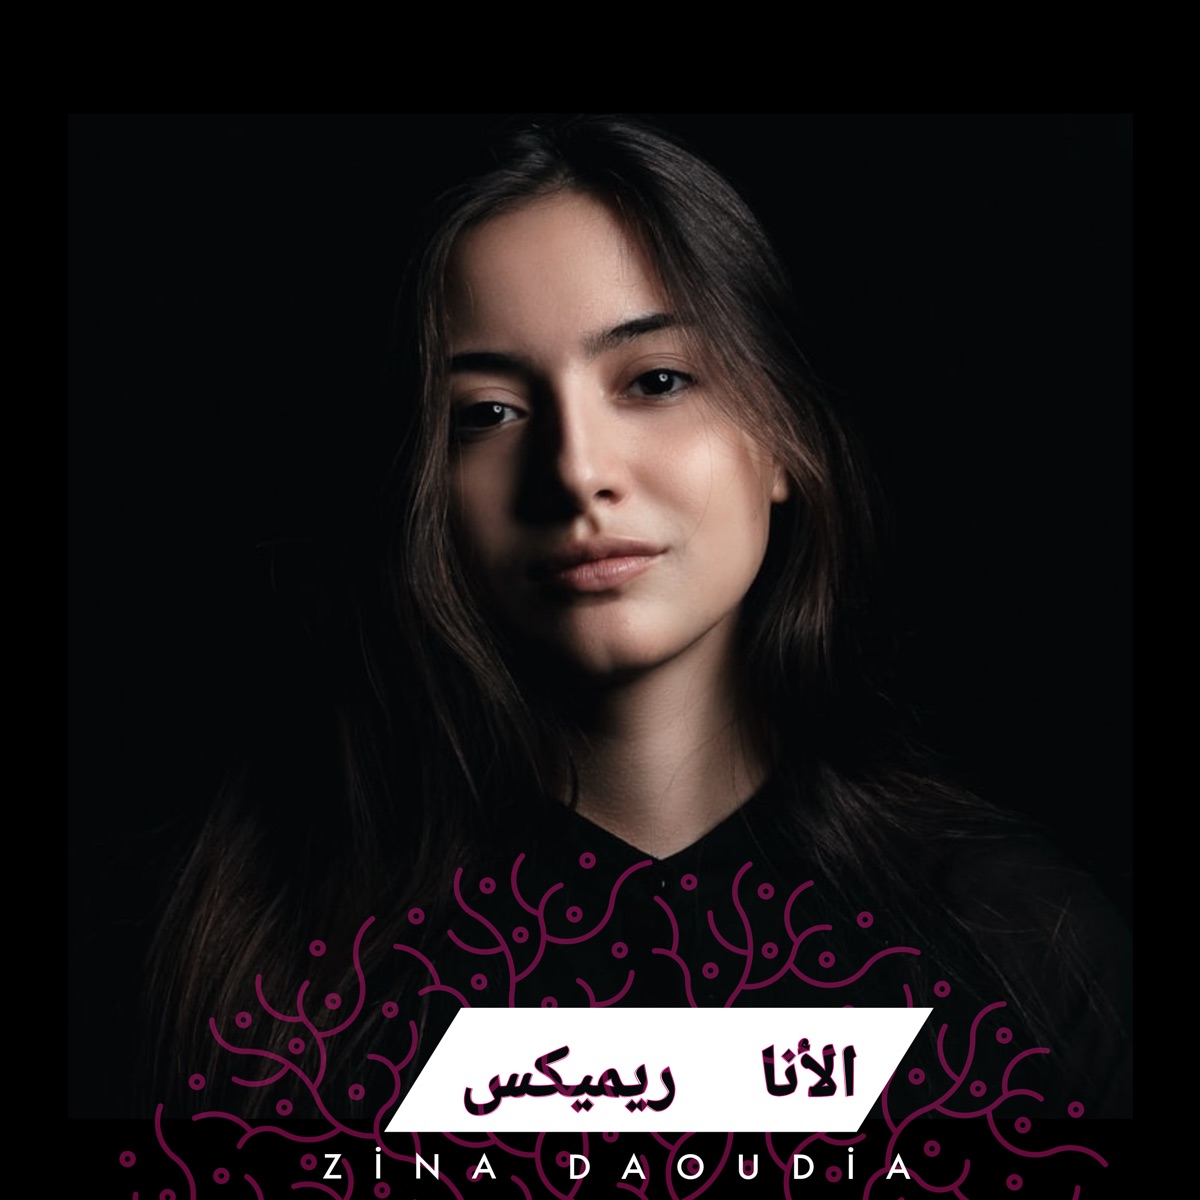 قلبي معك (Remix) - Single - Album by Zina Daoudia - Apple Music